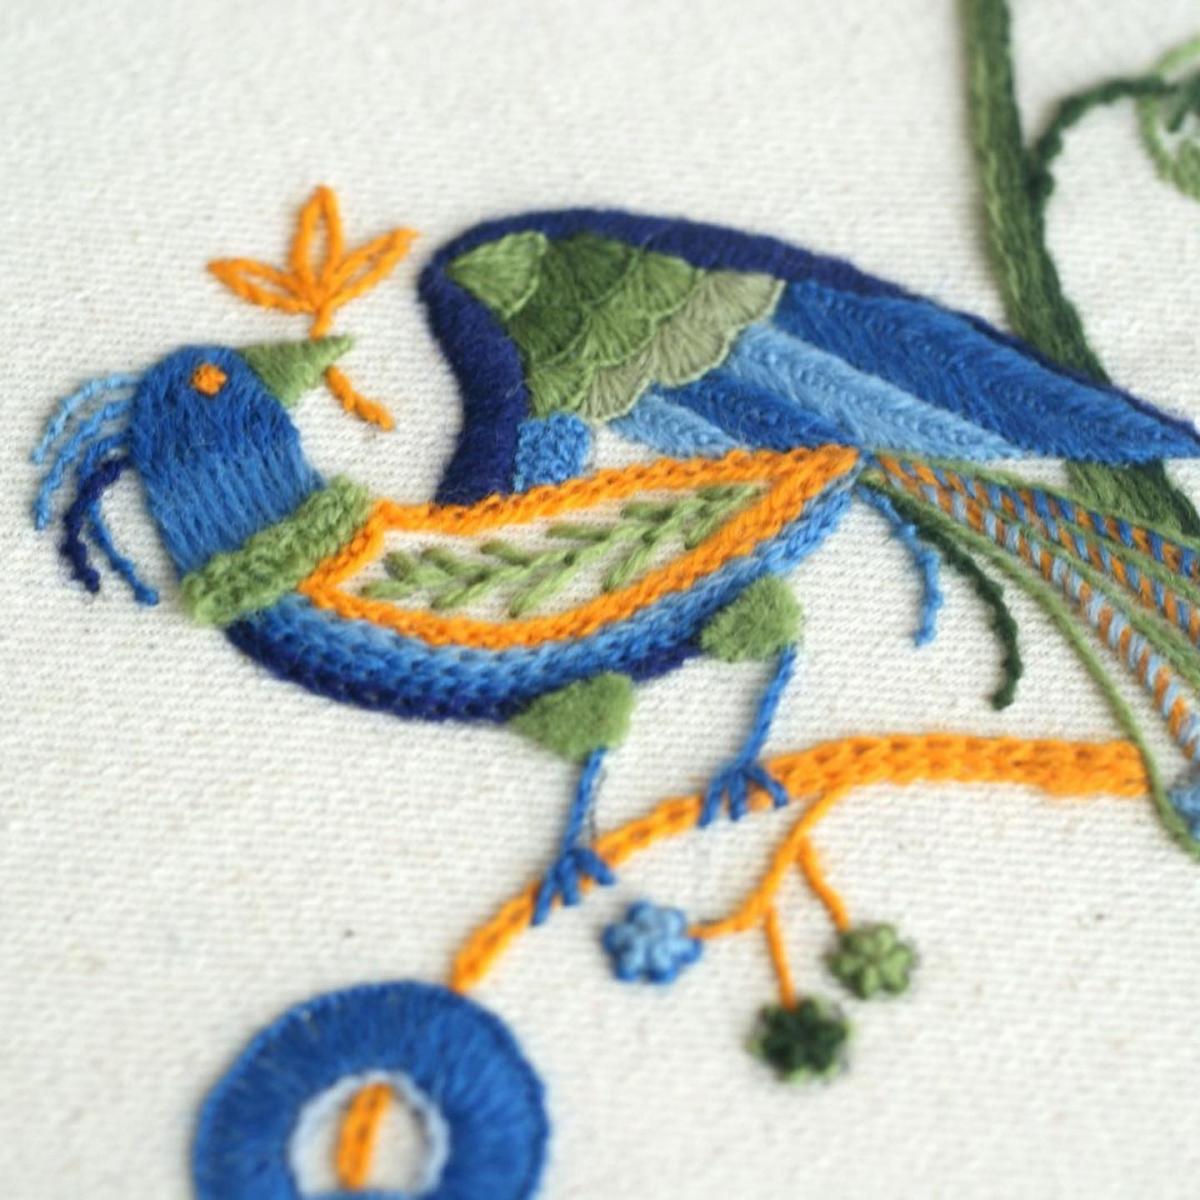 embroidery school | Машинная вышивка обучение работе в программах Embird, Wilcom.